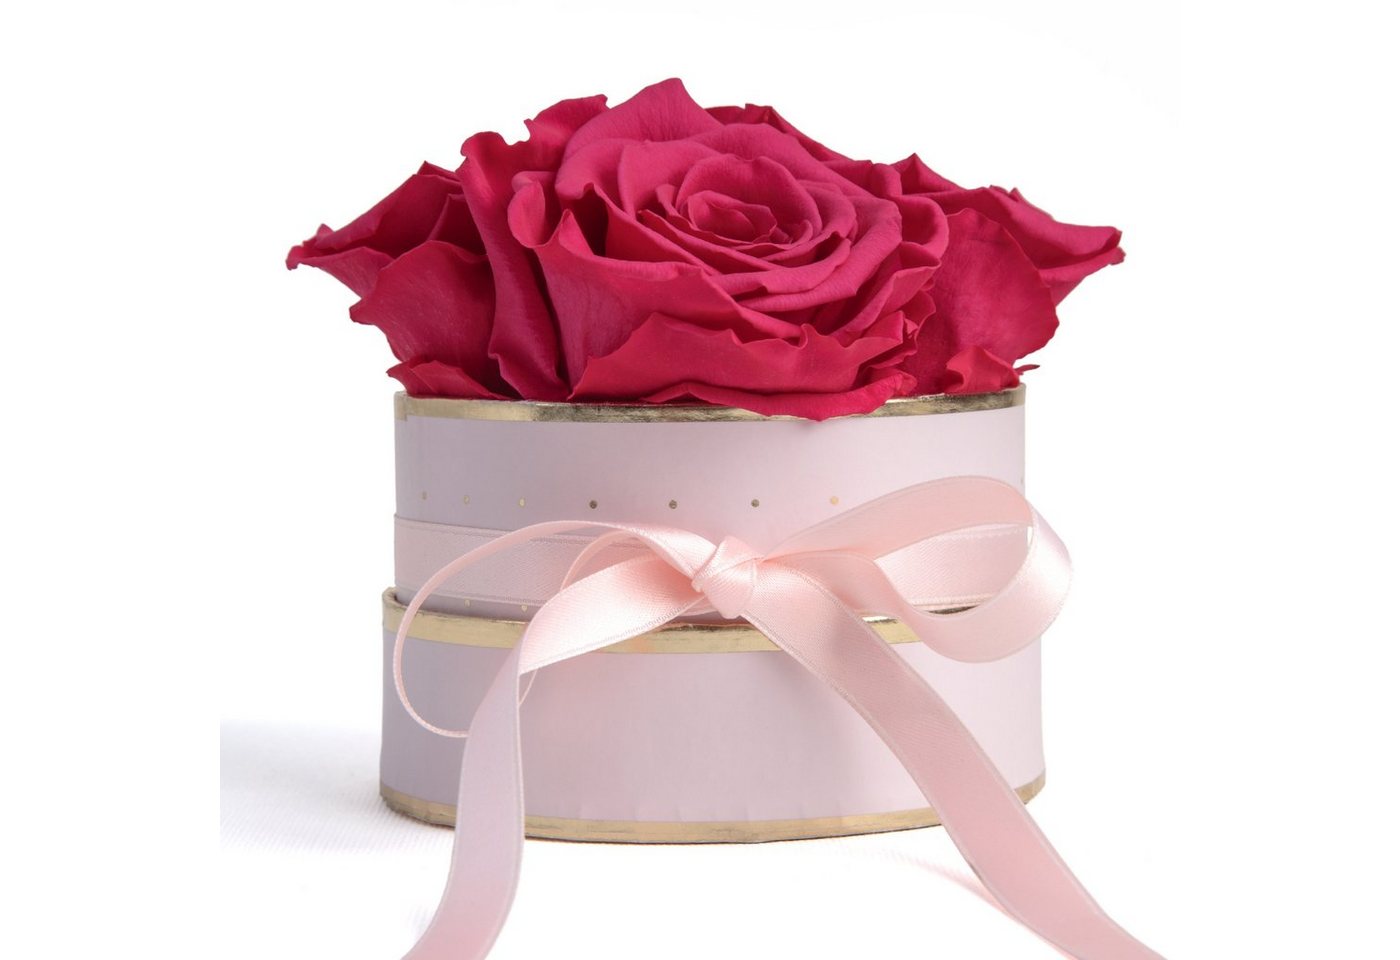 Kunstblume Infinity Rosenbox rosa rund 4 konservierte Rosen Geschenk für Frauen Rose, ROSEMARIE SCHULZ Heidelberg, Höhe 10 cm, echte konservierte Rosen von ROSEMARIE SCHULZ Heidelberg